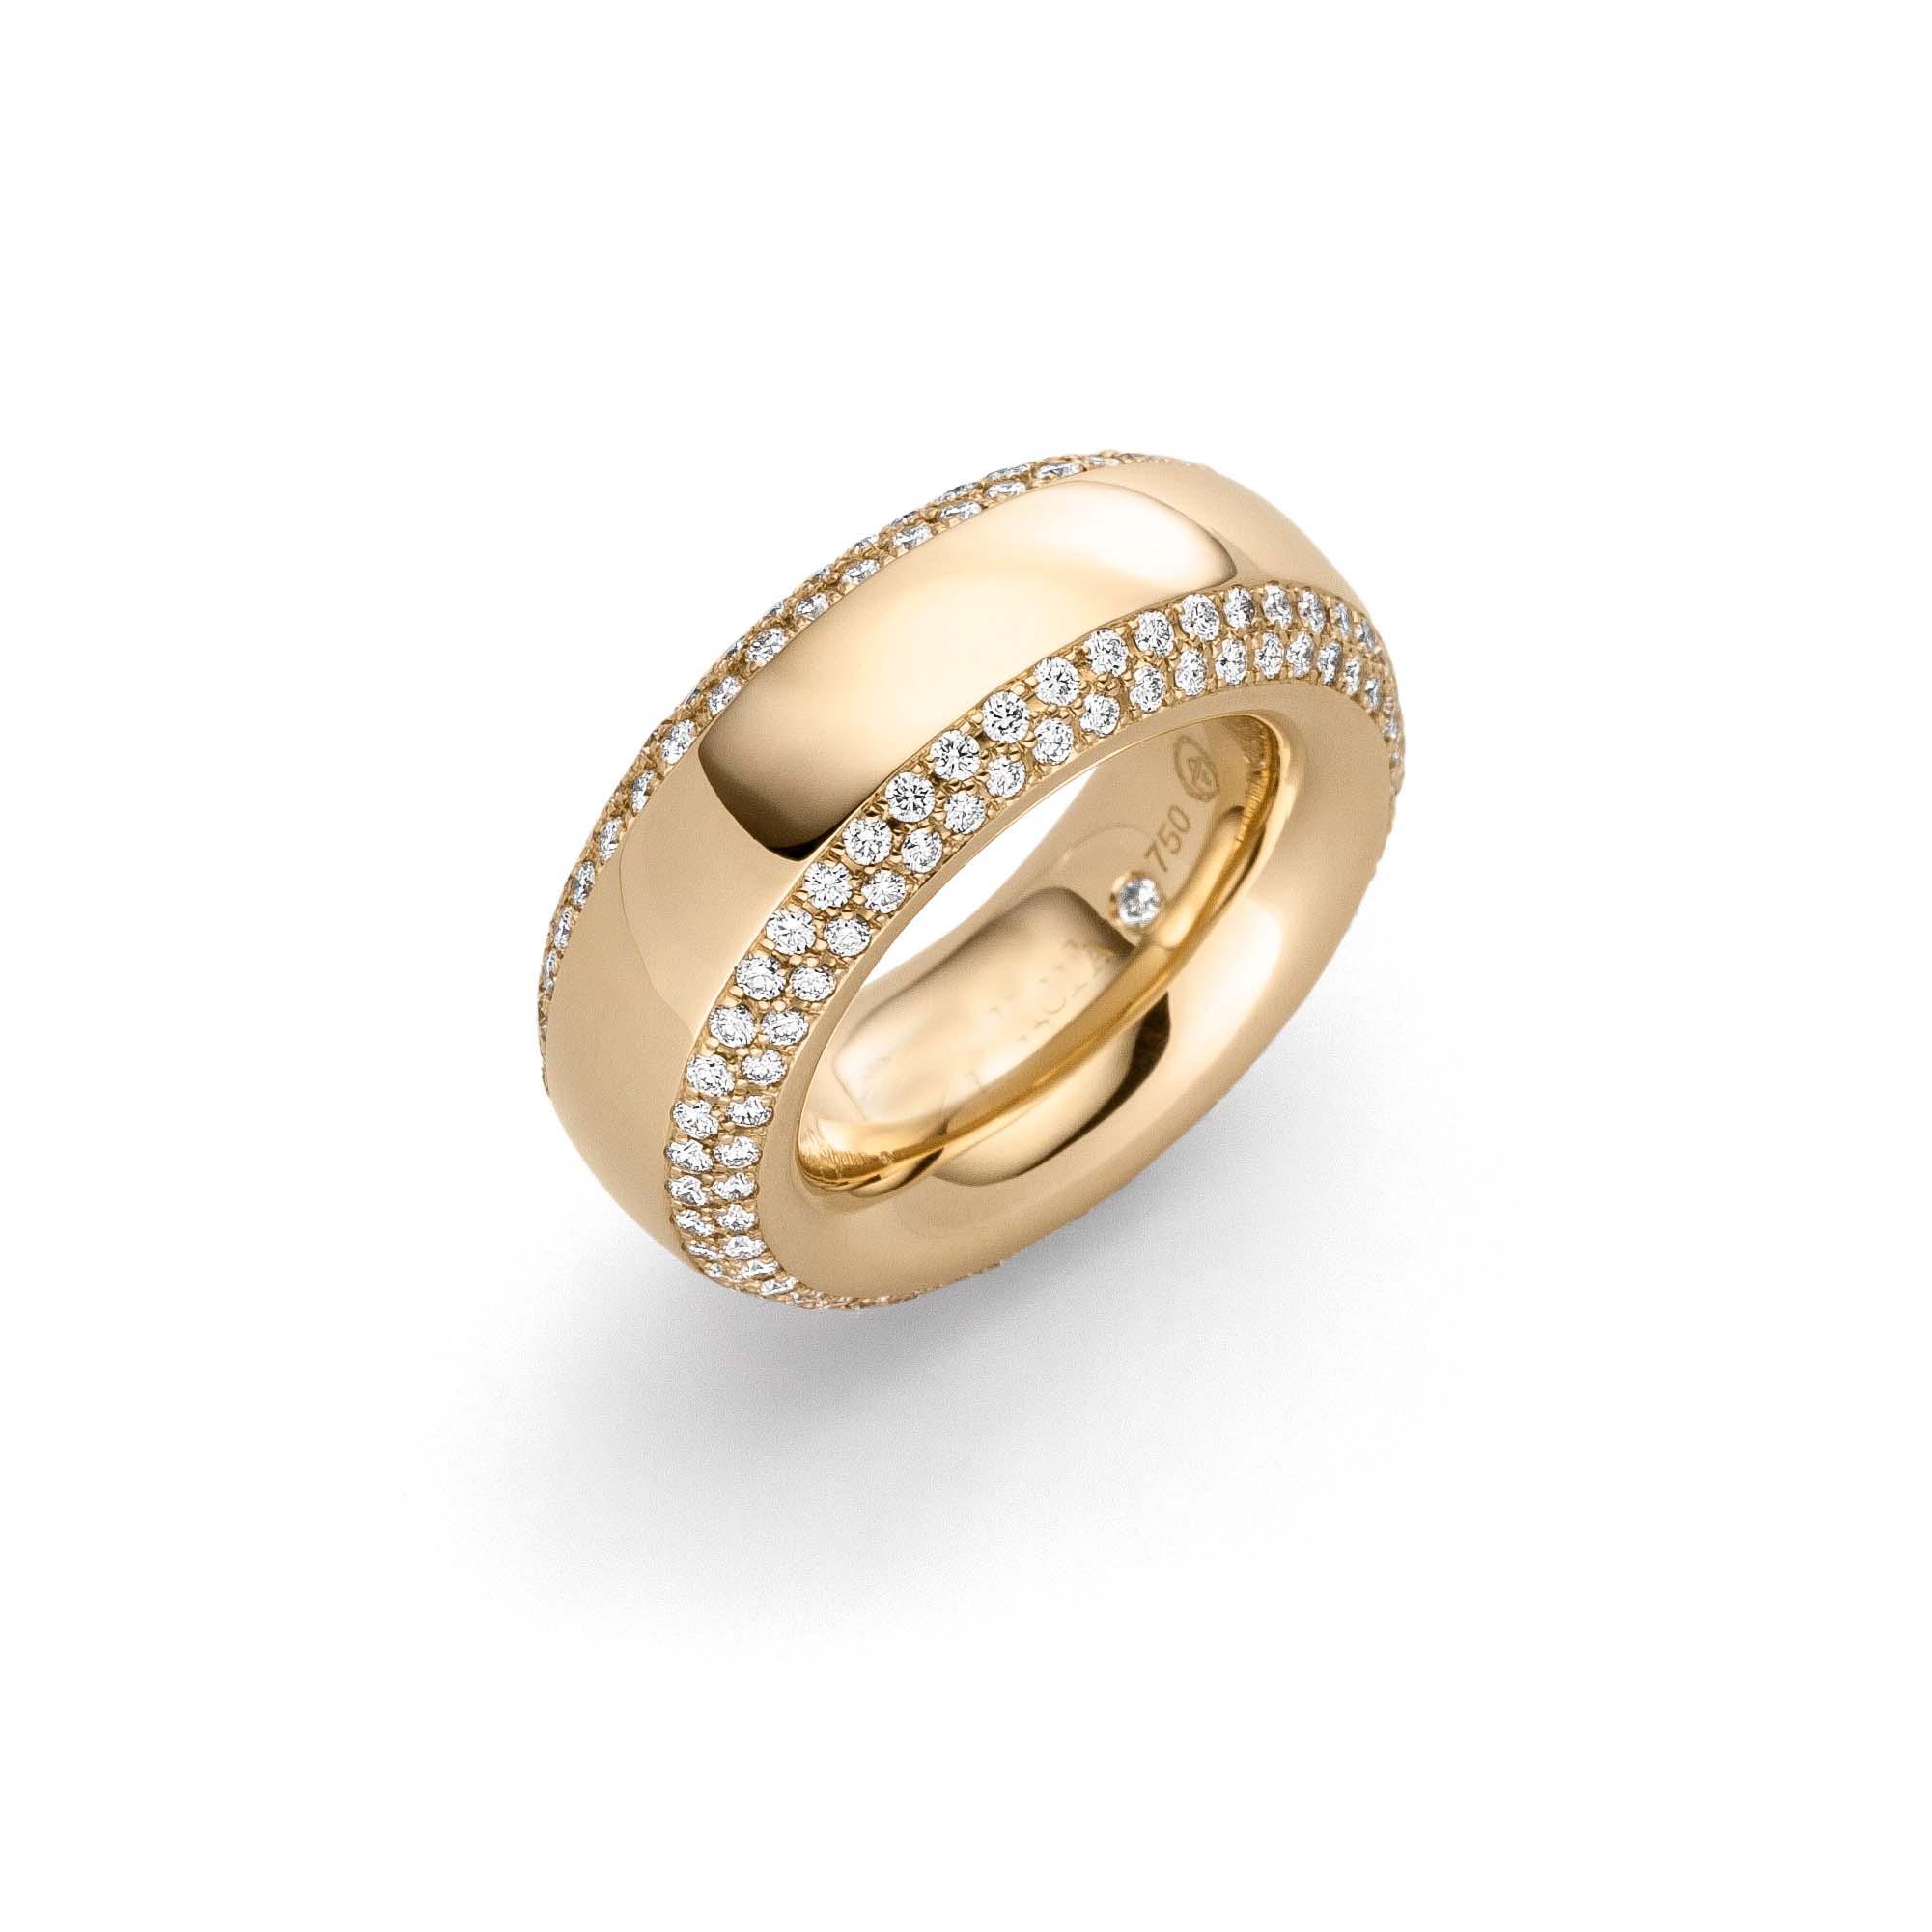 Venta al por mayor de anillos de oro personalizados, venta al por mayor, joyería CZ de plata esterlina, fabricantes de joyas OEM/ODM